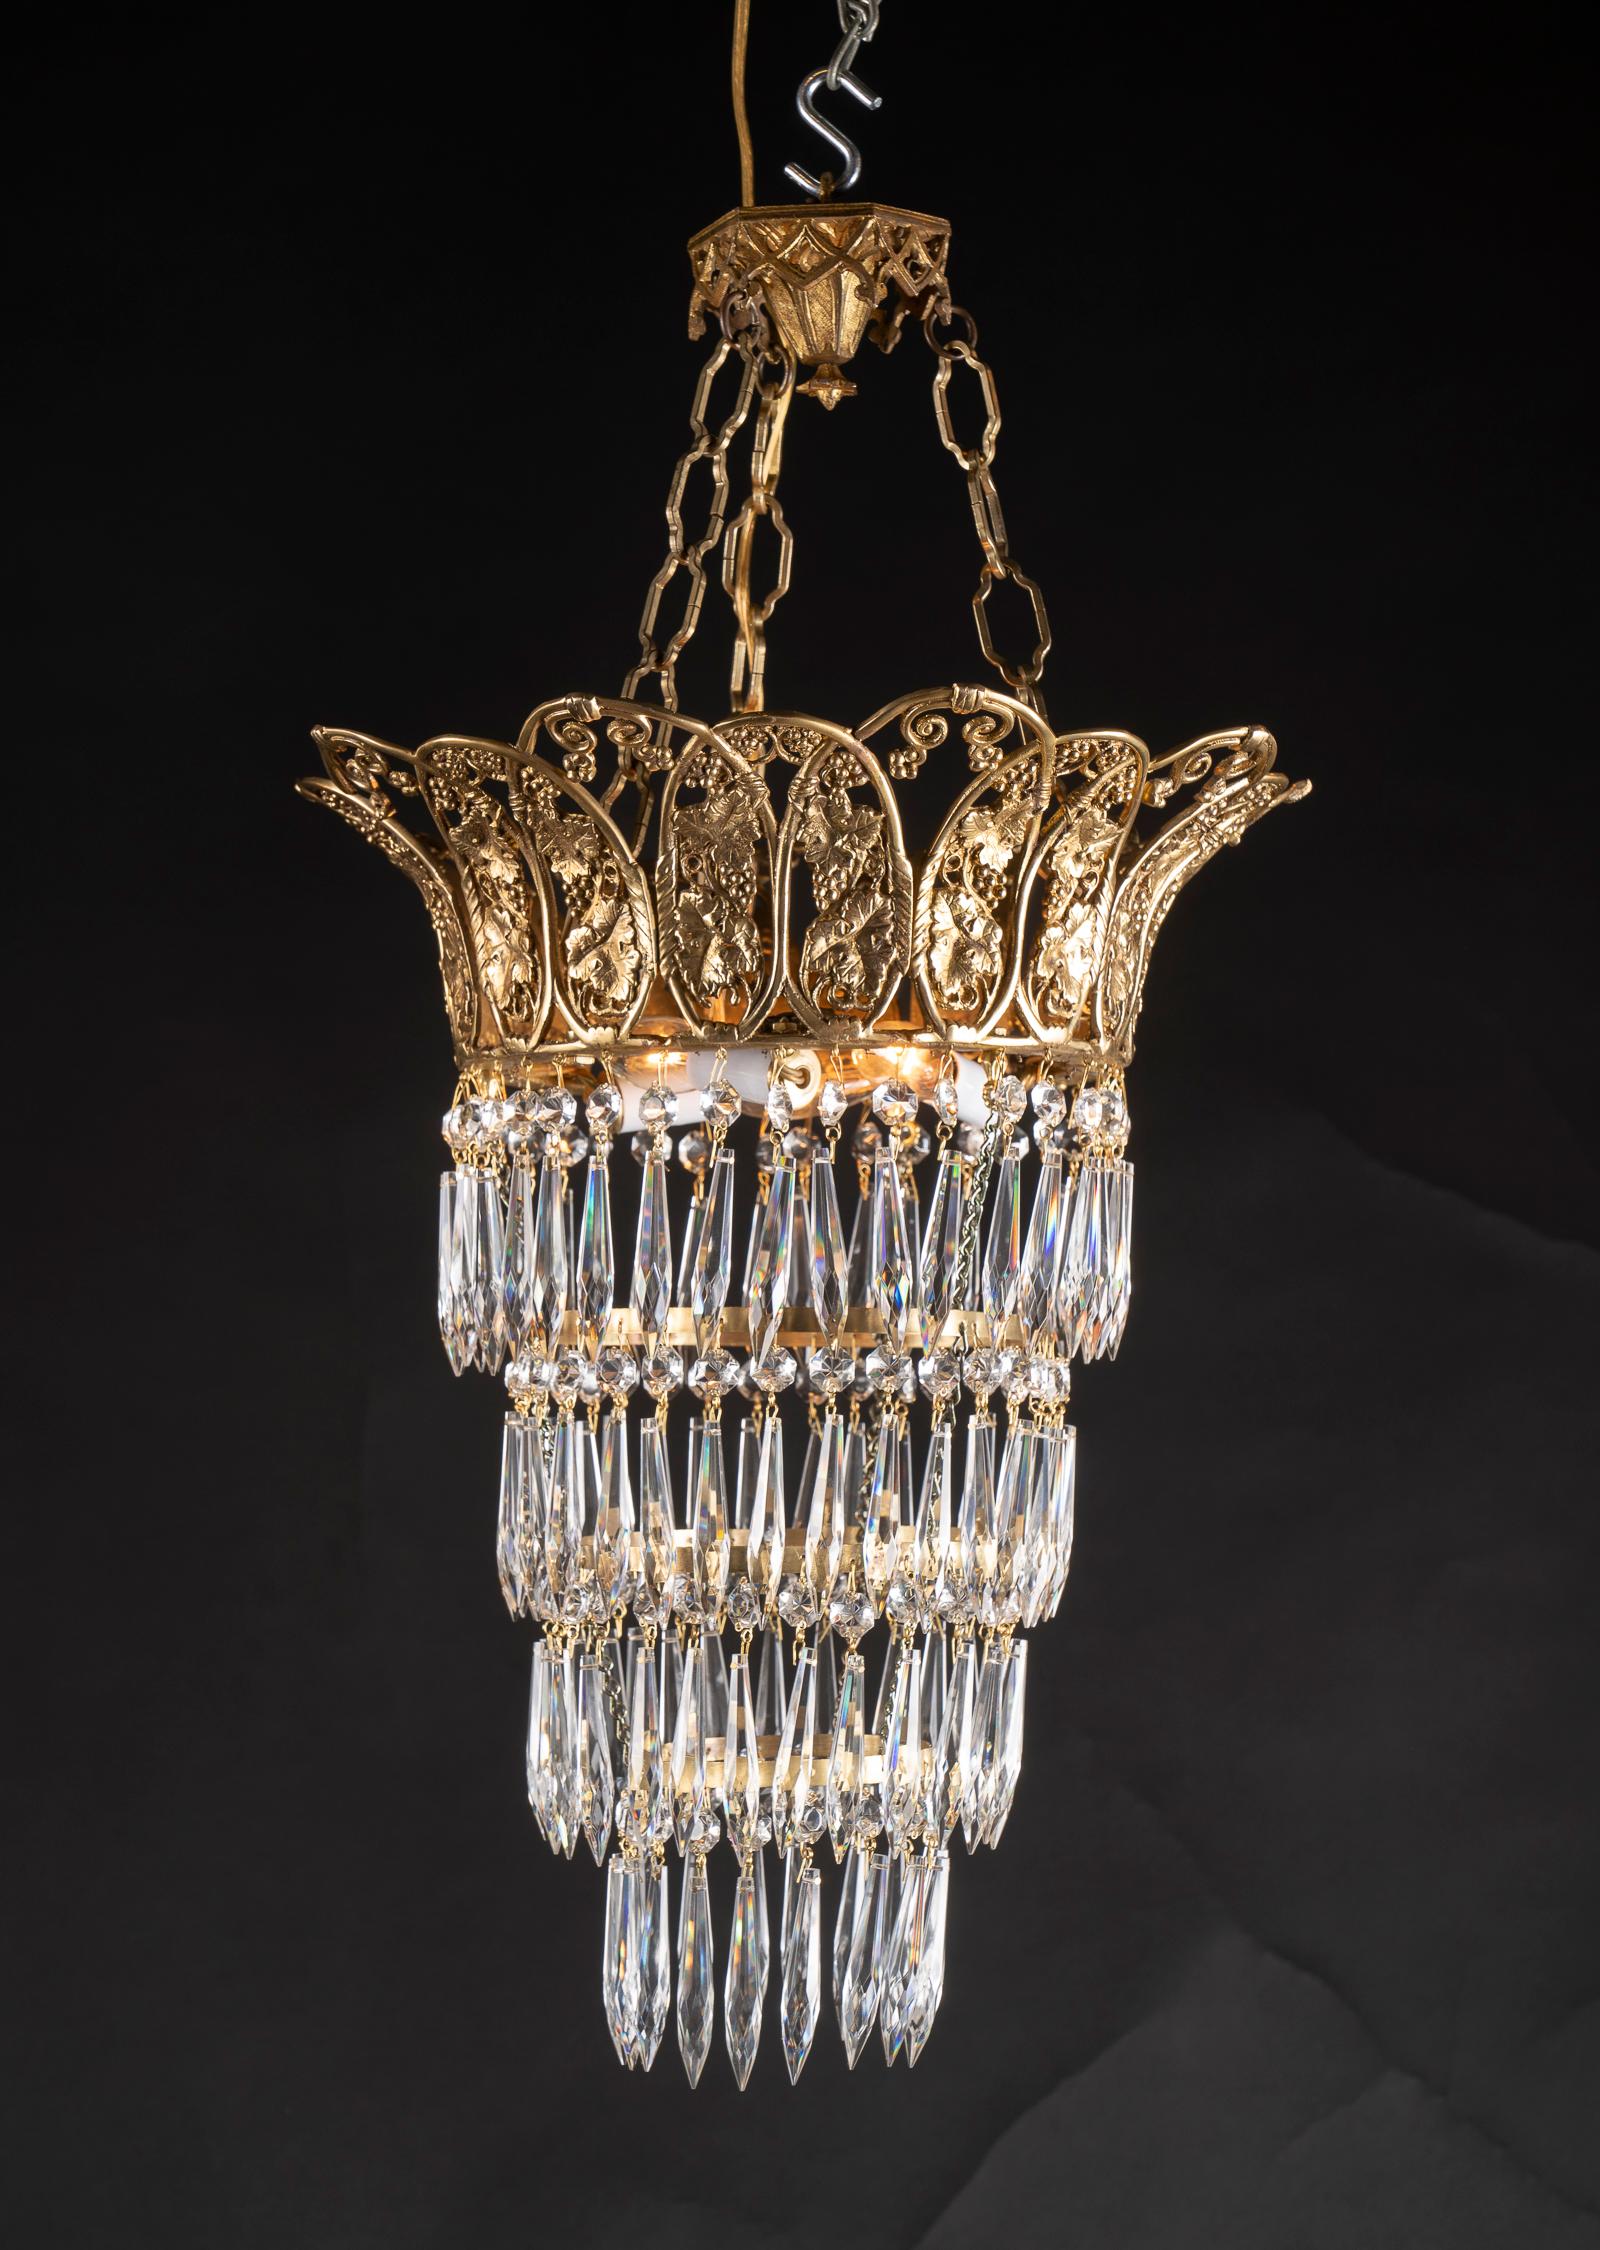 Cette magnifique paire de lustres de style Louis XVI présente quatre étages sphériques de cristaux suspendus à une couronne de bronze détaillée au sommet. La couronne porte un motif de raisin en référence à Bacchus, le dieu du vin, et date de la fin